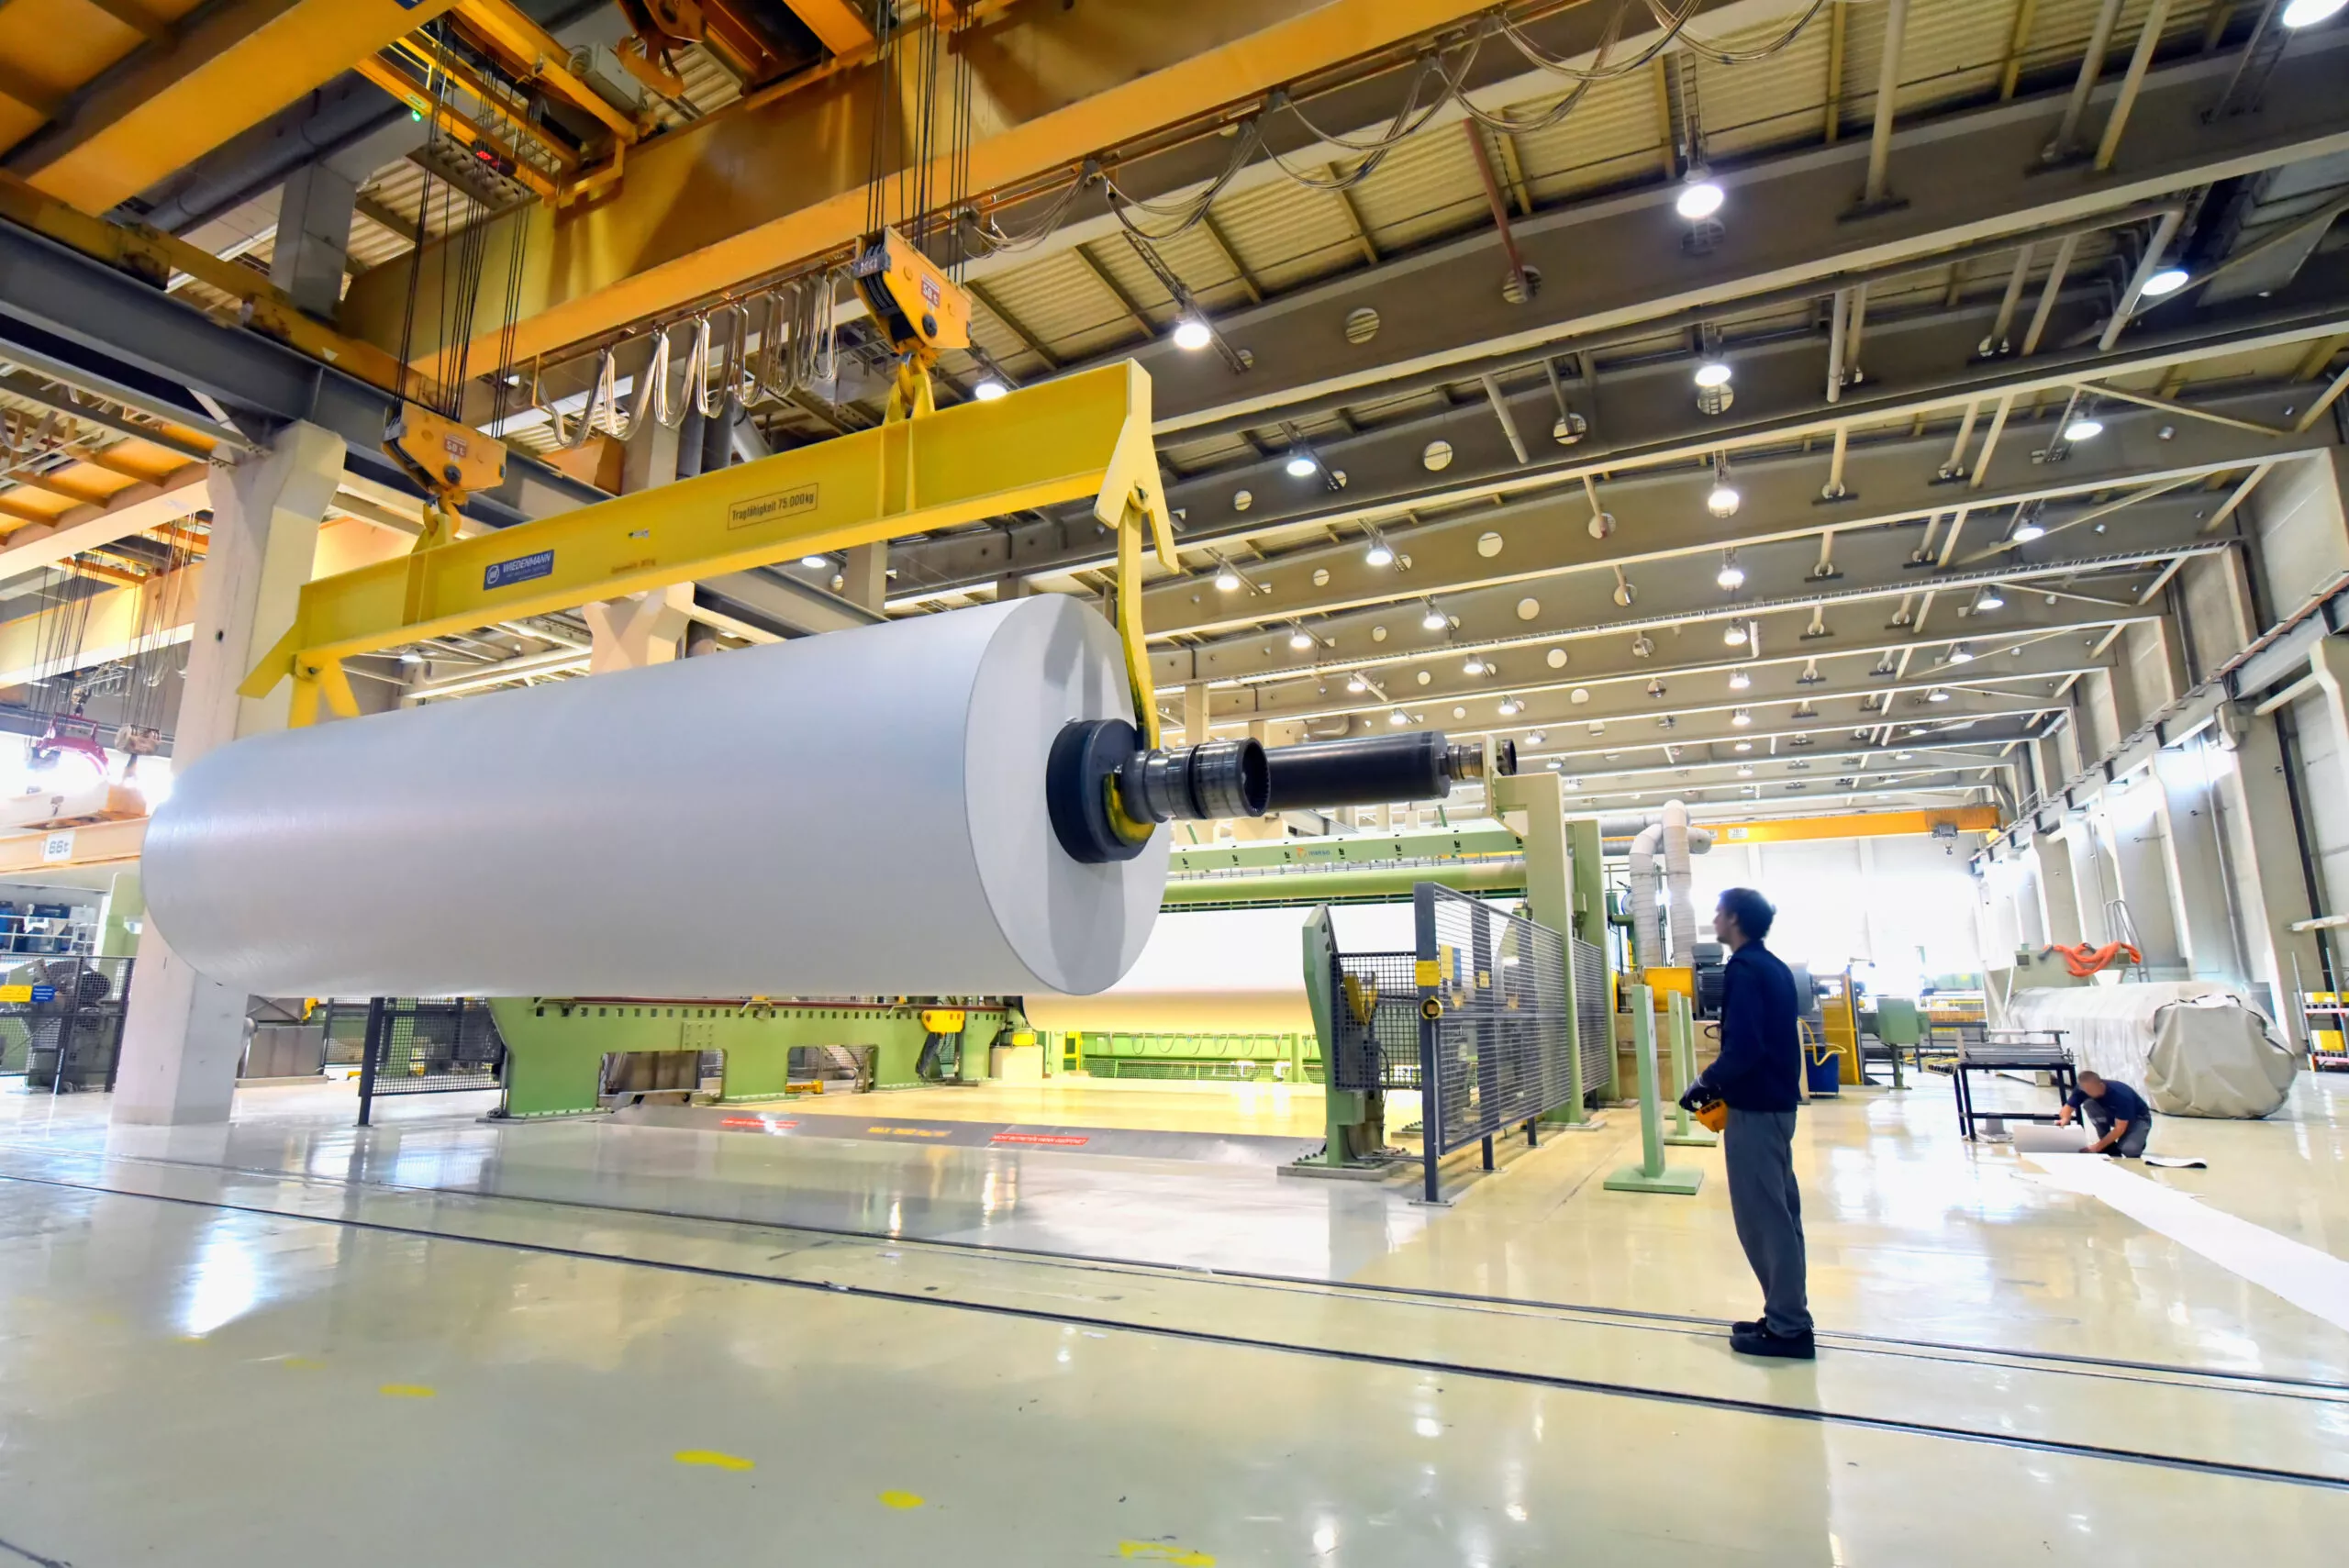 Herstellung von papier in einer modernen Fabrik Papierrolle am Kran // Production of paper in a modern factory paper roll on a crane